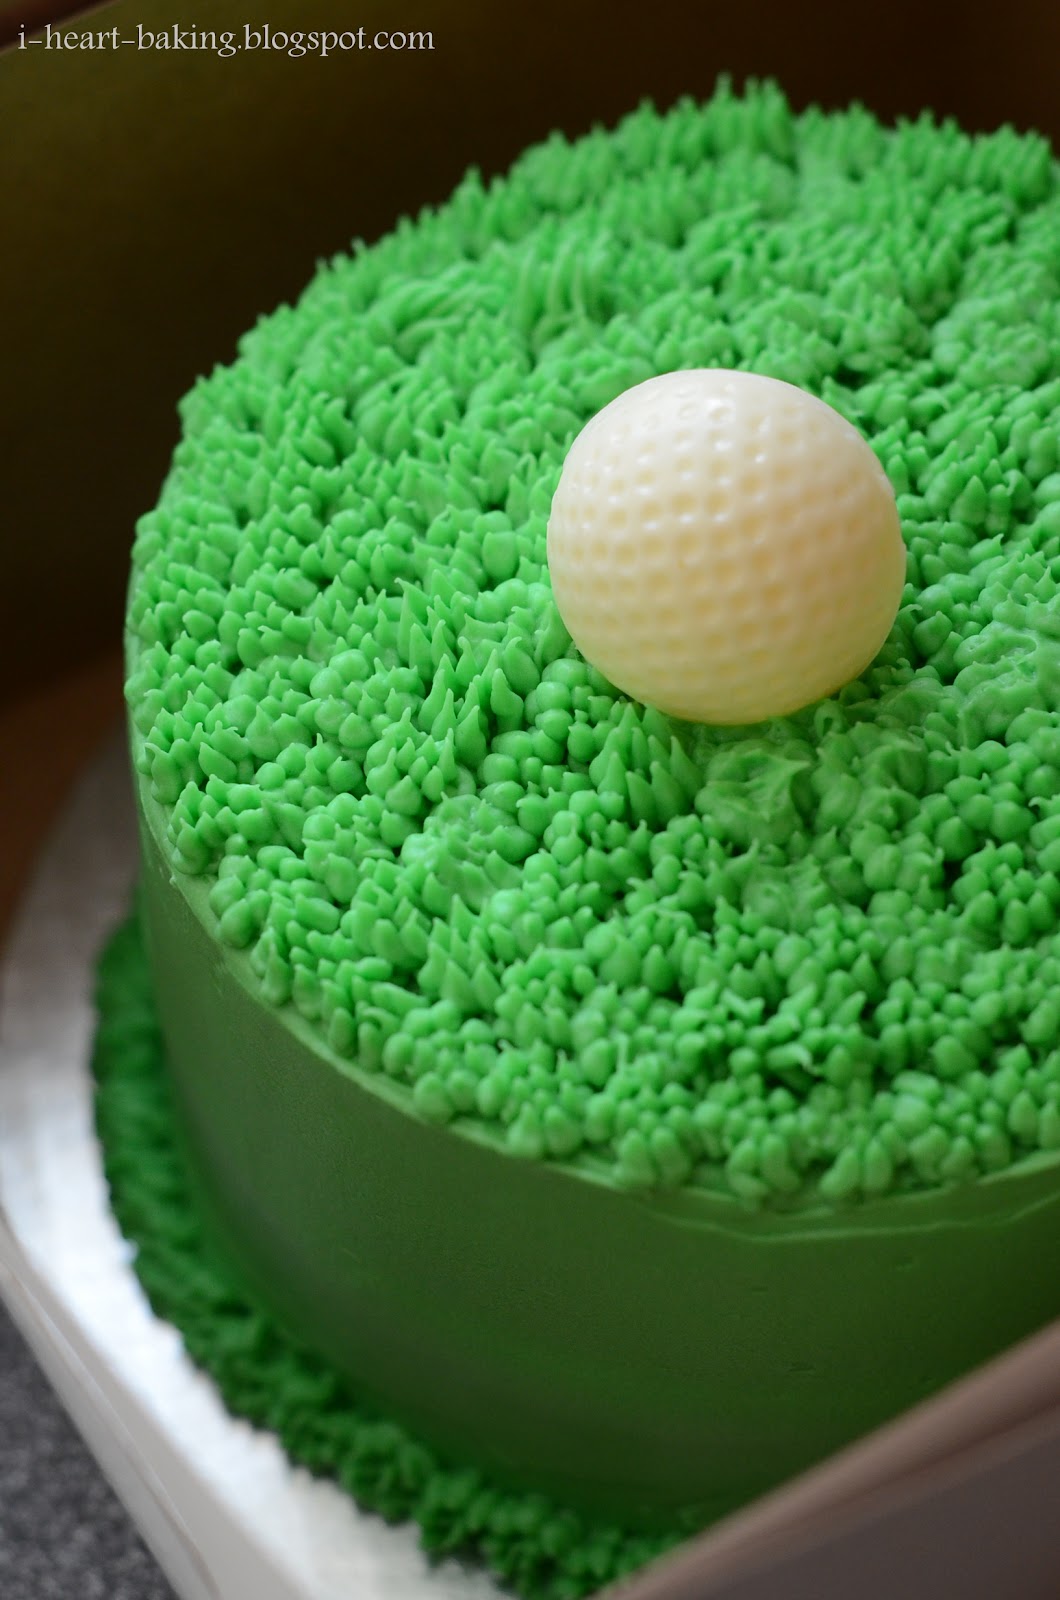 i heart baking!: golf ball cake - chocolate cake with cherries